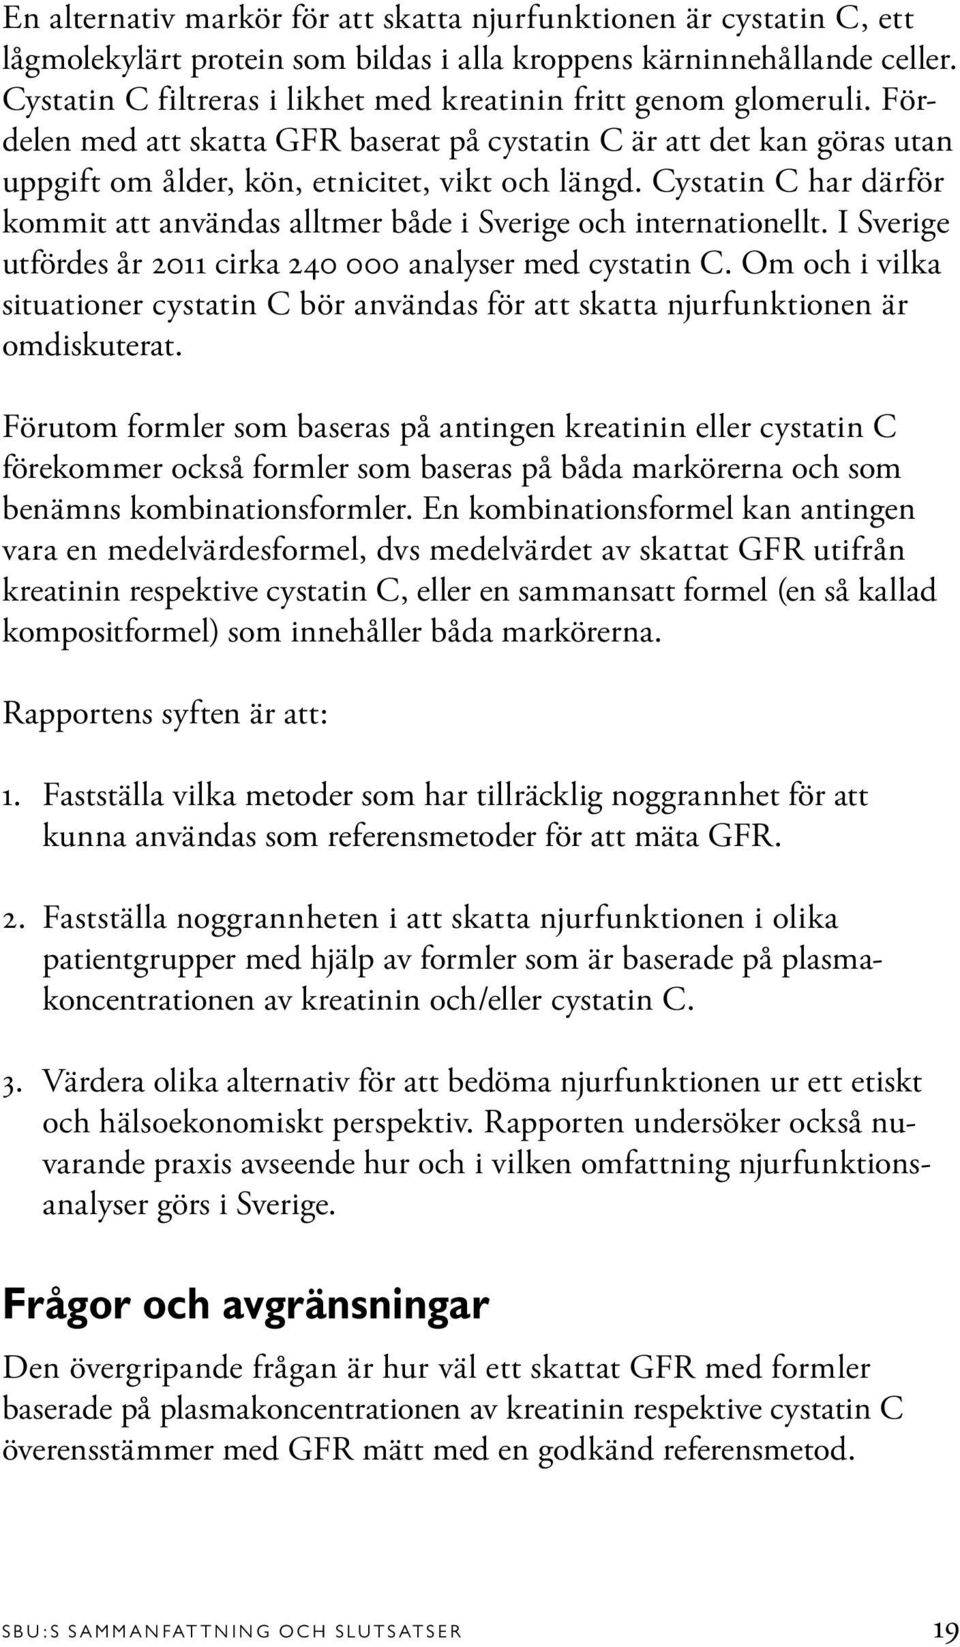 Cystatin C har därför kommit att användas alltmer både i Sverige och internationellt. I Sverige utfördes år 2011 cirka 240 000 analyser med cystatin C.